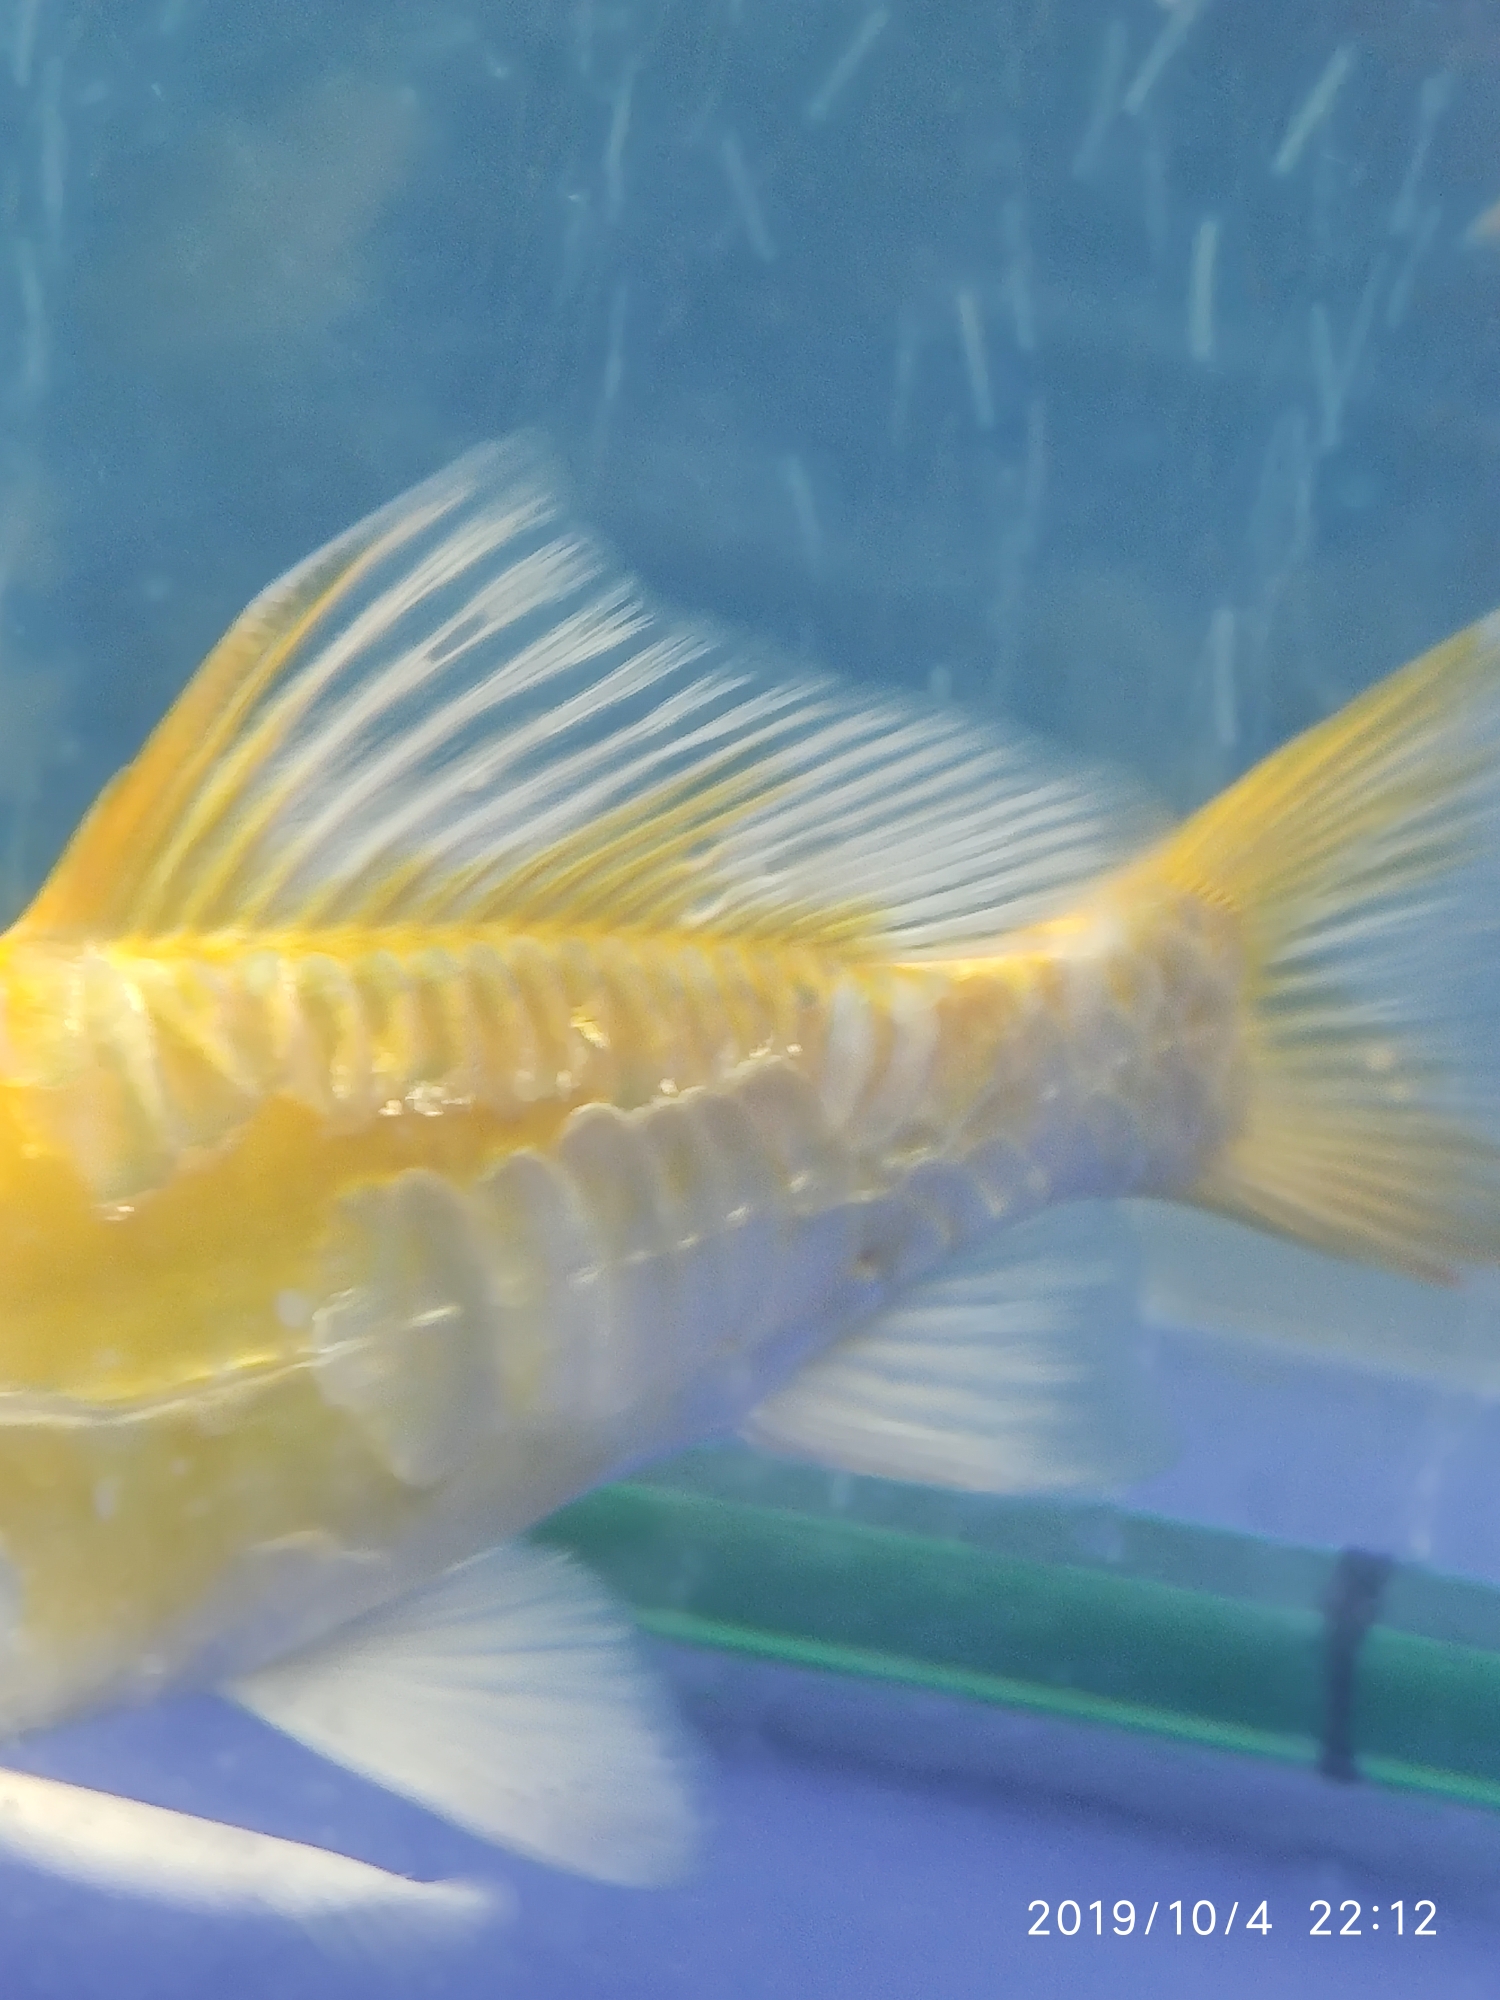 Ashkenazi yellow body caudal fin with a small hole bubble Pikonni fish ASIAN AROWANA,AROWANA,STINGRAY The6sheet